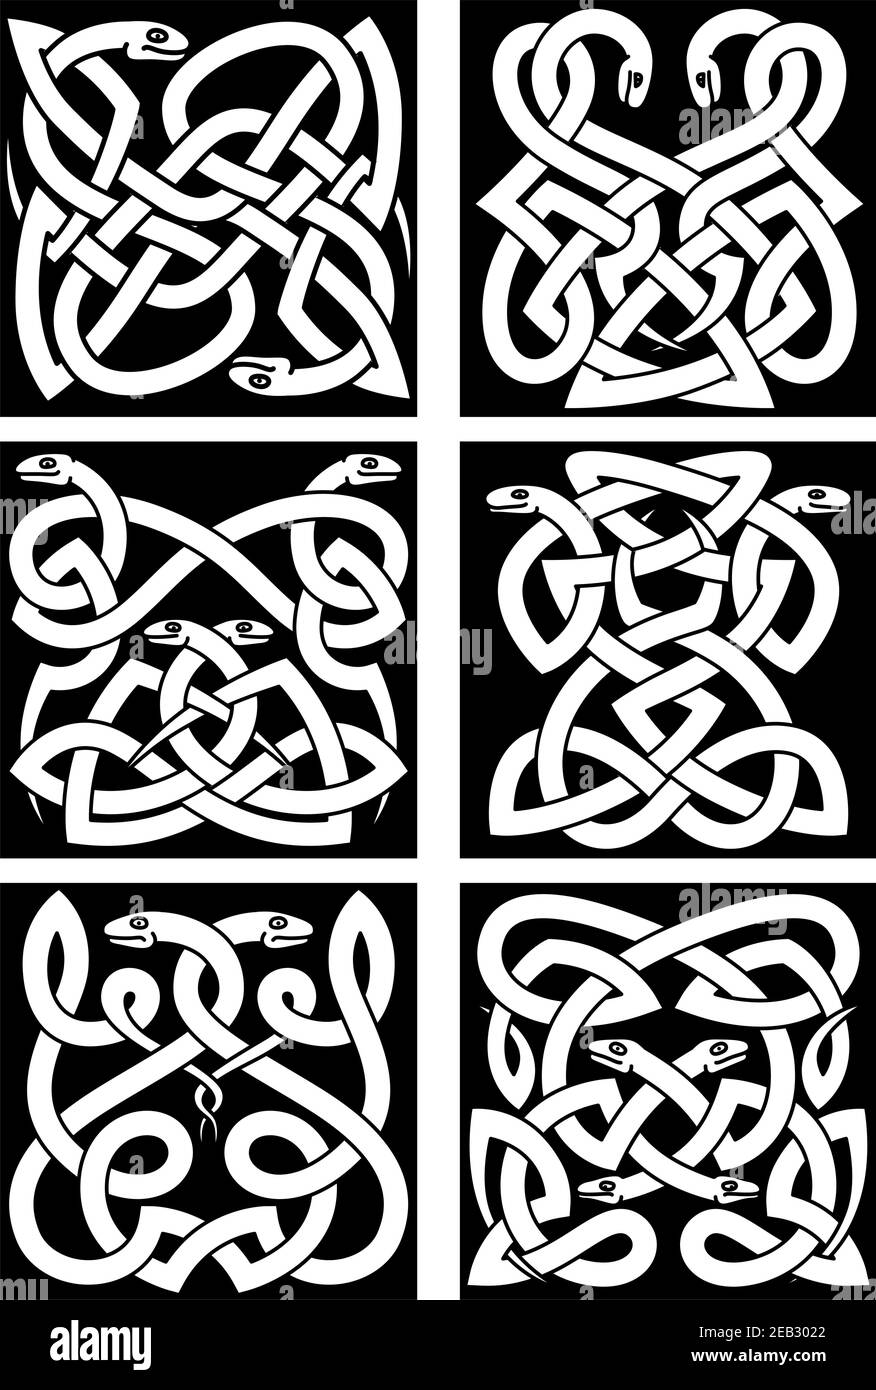 Les serpents celtiques se noue avec des reptiles entrelacés et des ornements tribaux. Décoration médiévale ou éléments de design en tatouage Illustration de Vecteur